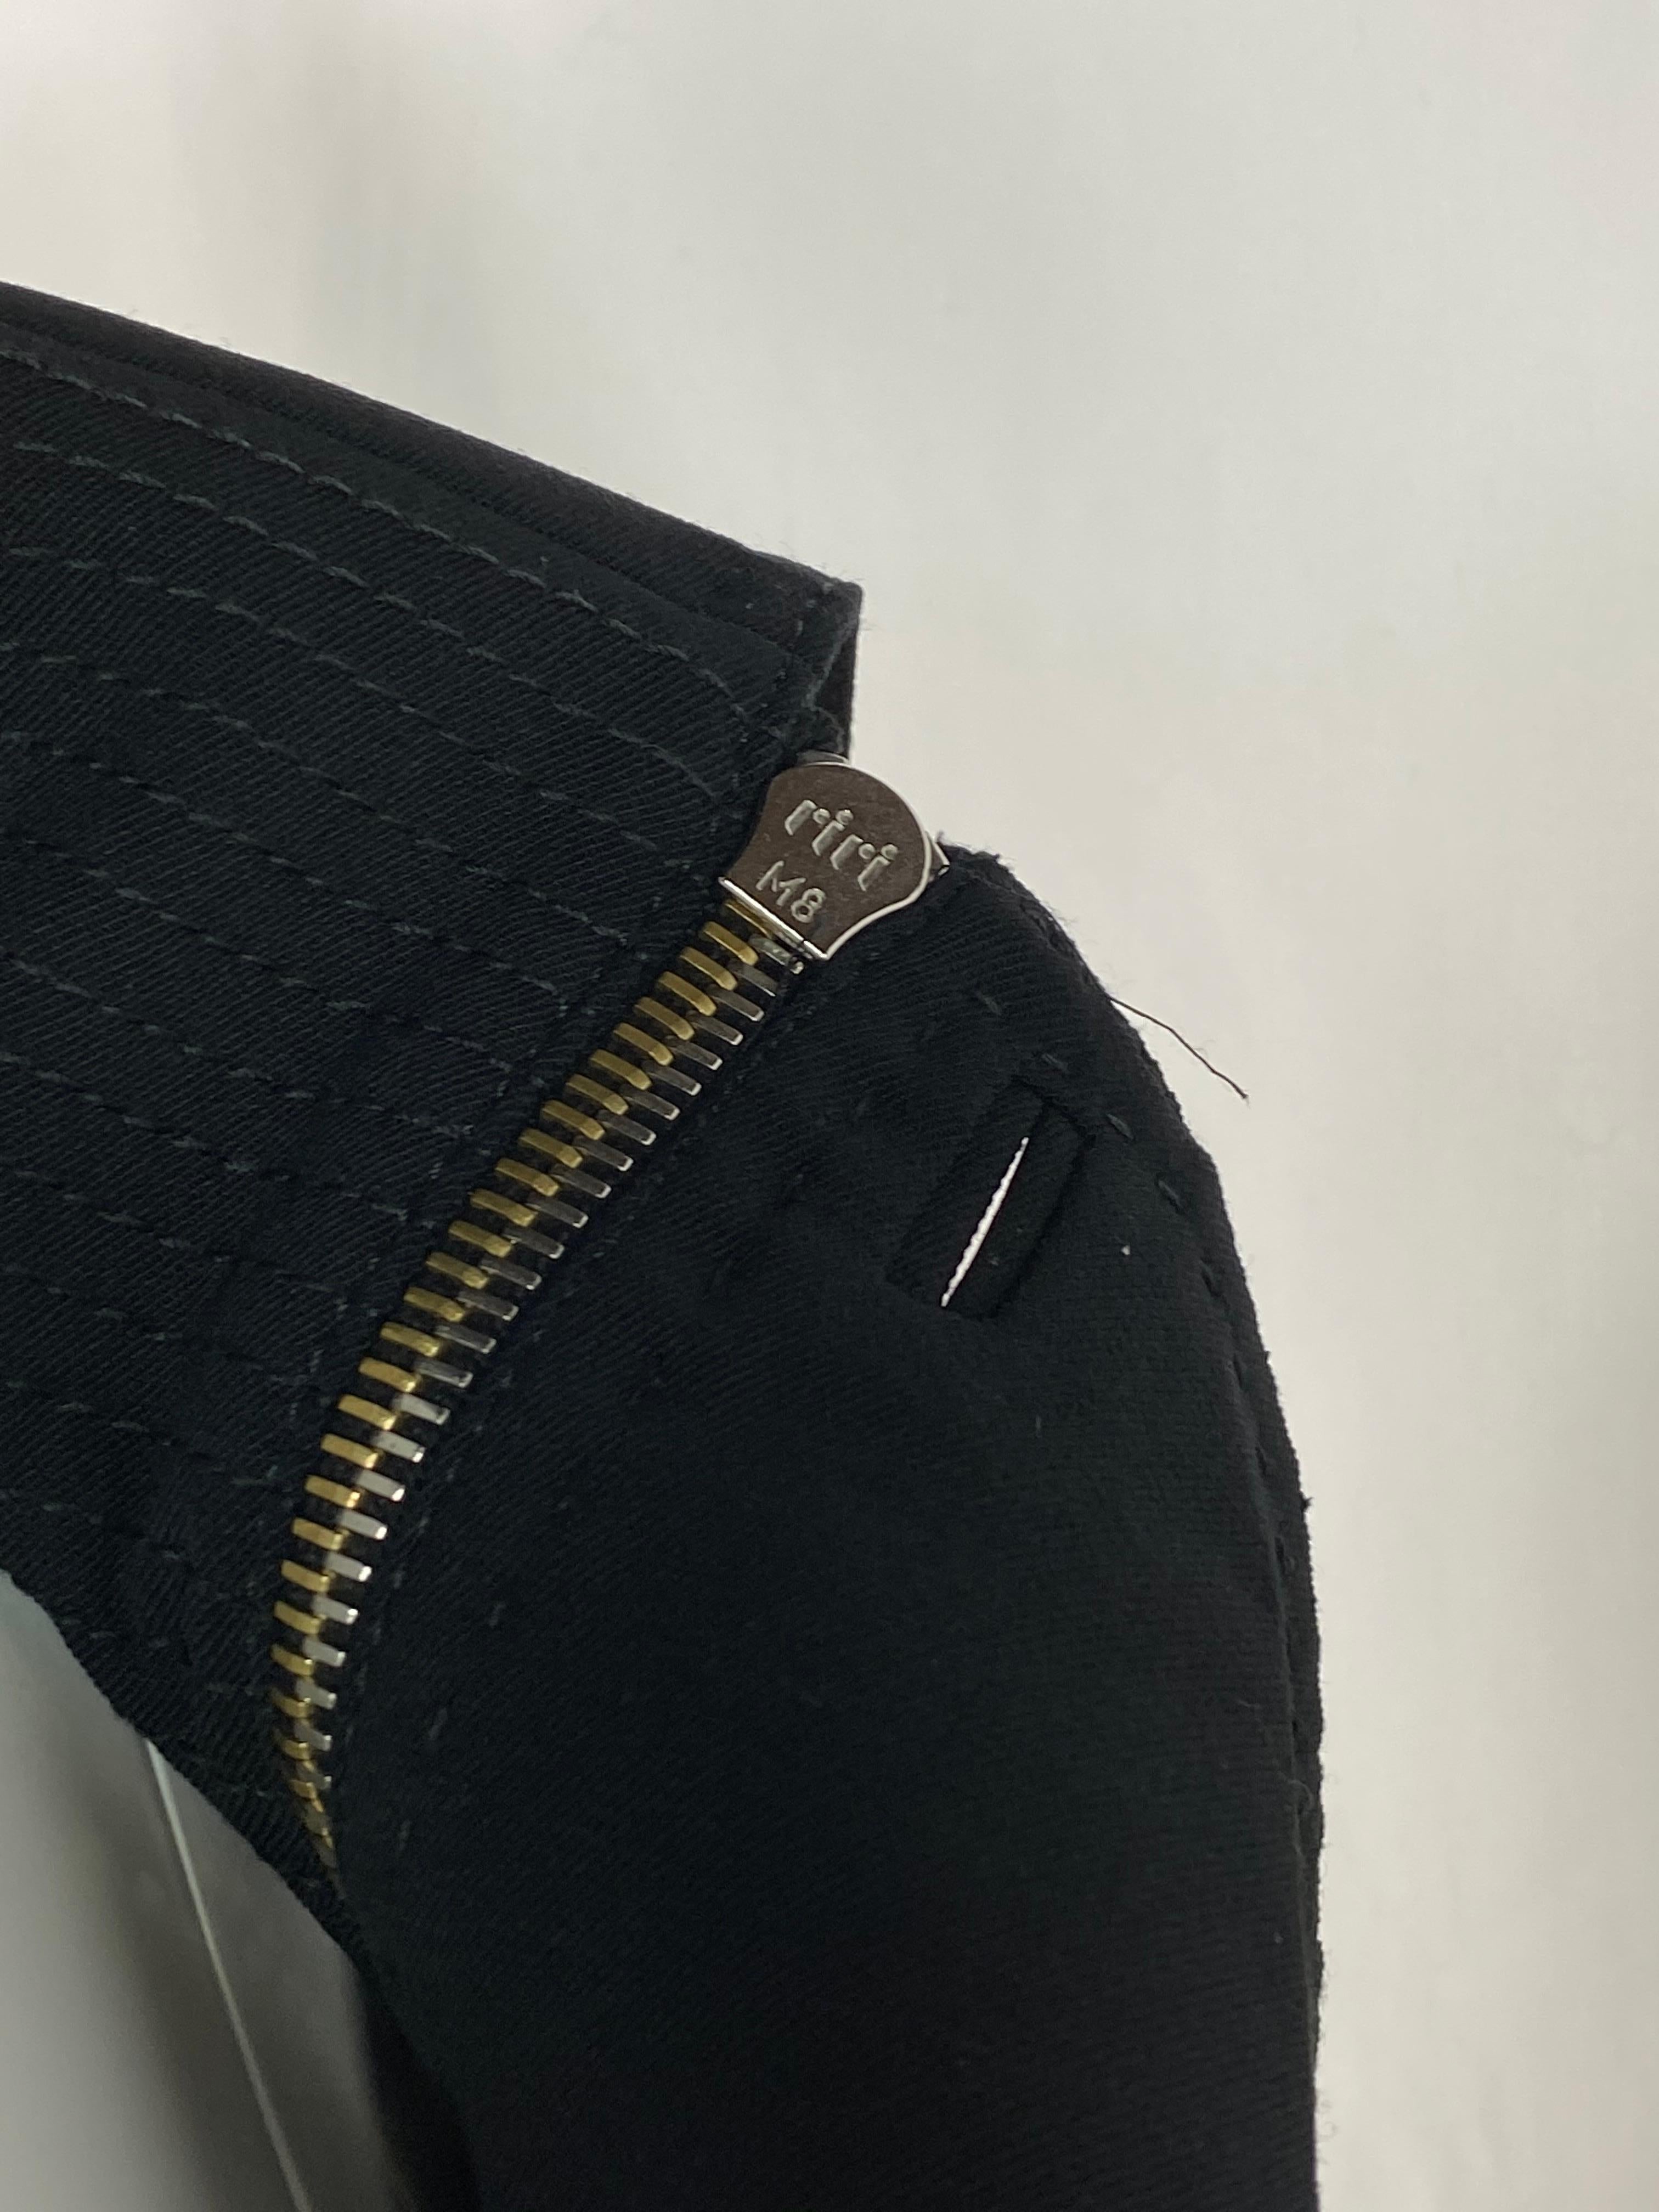 Gianfranco Ferre Black Wool Long Coat Jacket w/ Belt Size 44 For Sale 7